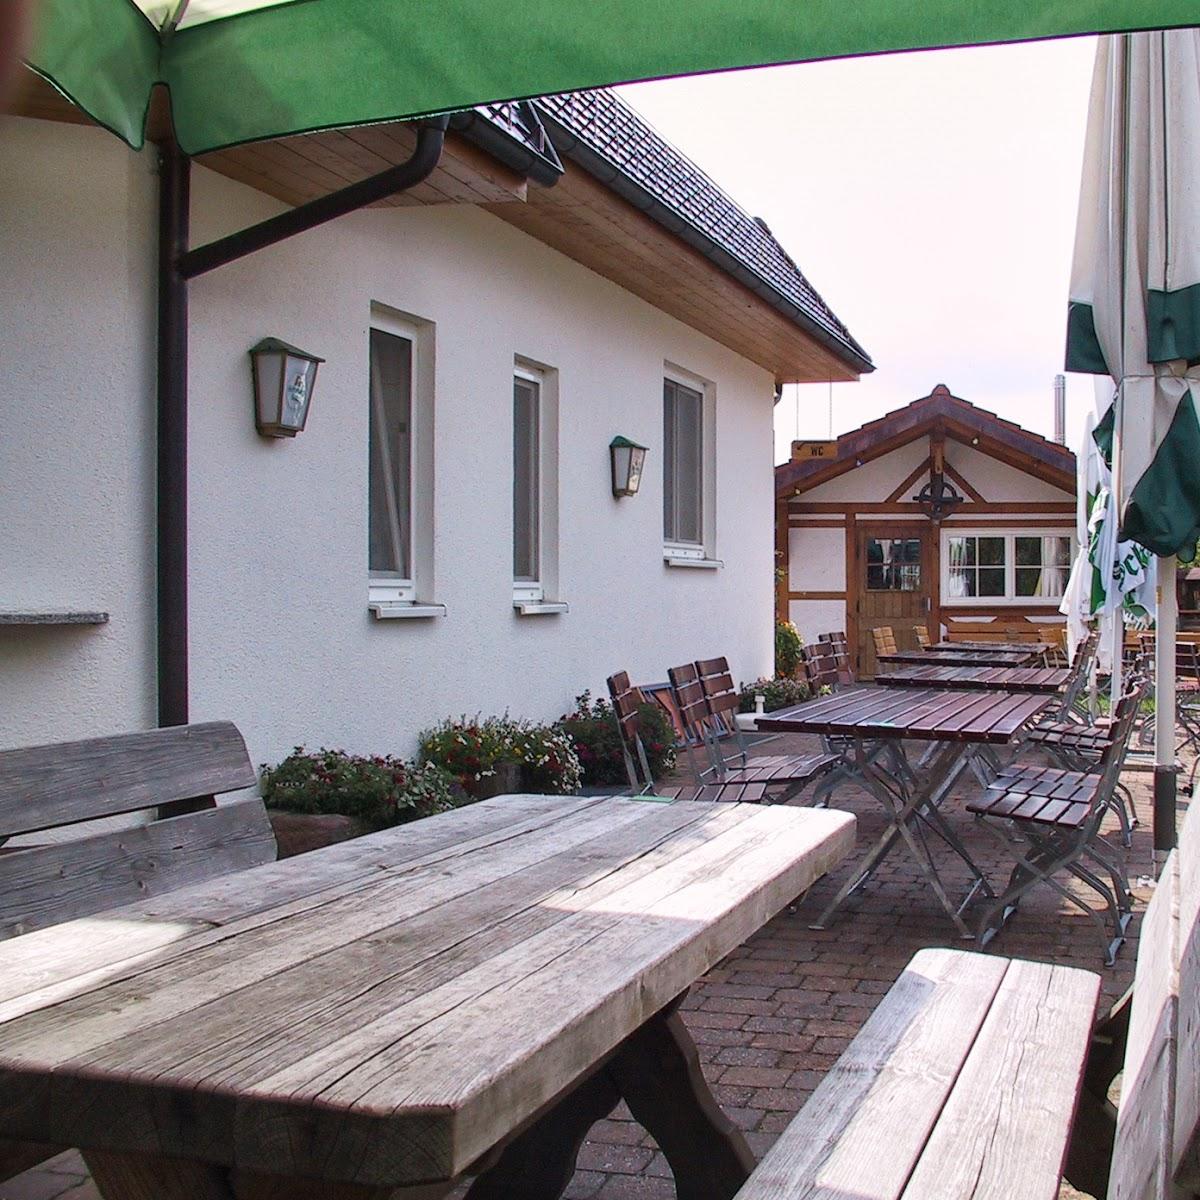 Restaurant "Gasthaus Krone" in  Neubulach